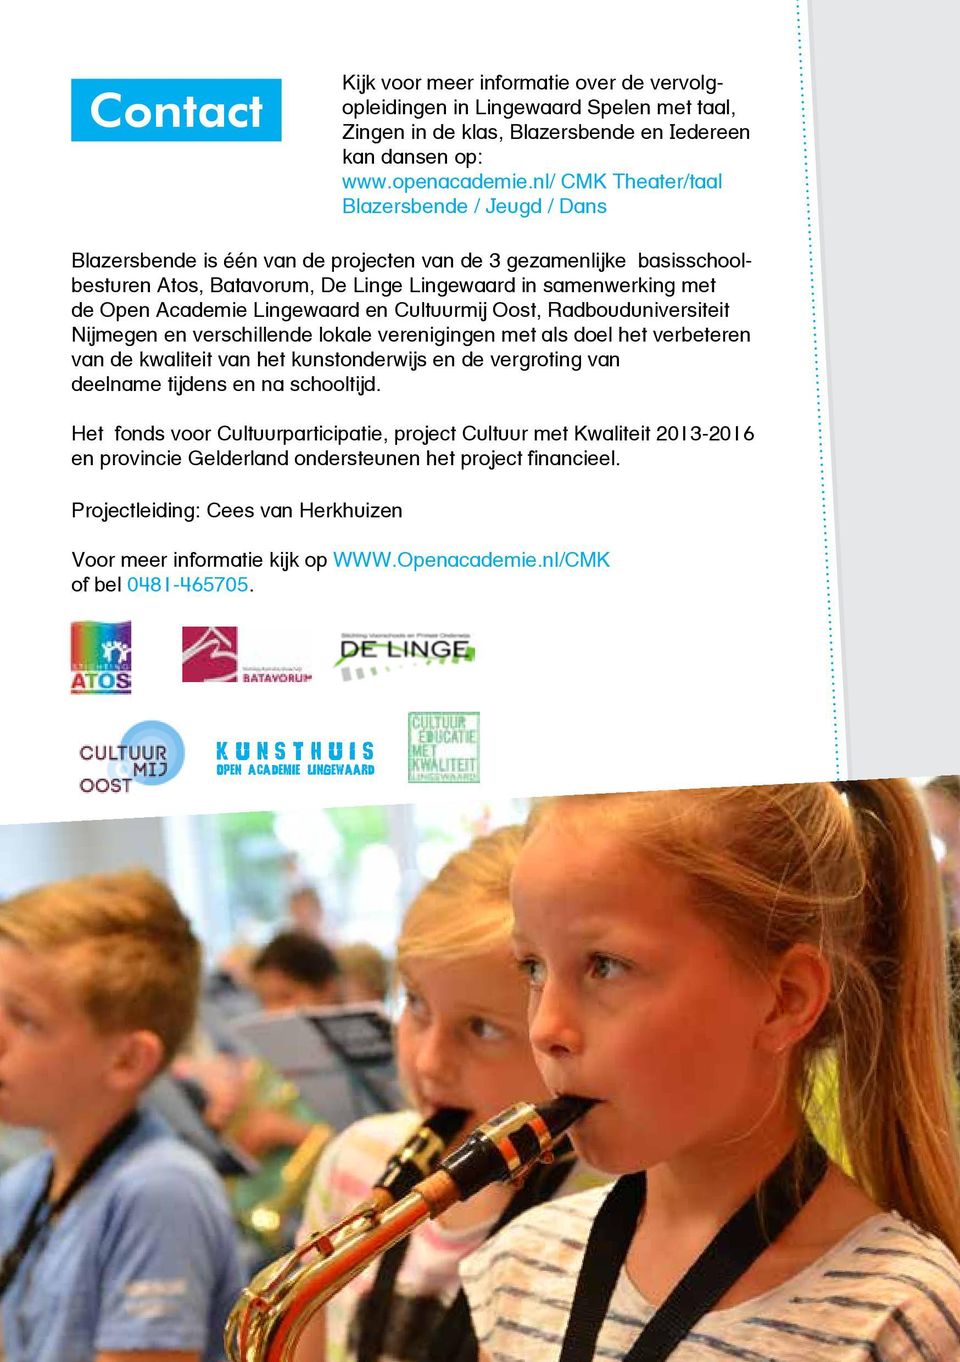 Academie Lingewaard en Cultuurmij Oost, Radbouduniversiteit Nijmegen en verschillende lokale verenigingen met als doel het verbeteren van de kwaliteit van het kunstonderwijs en de vergroting van